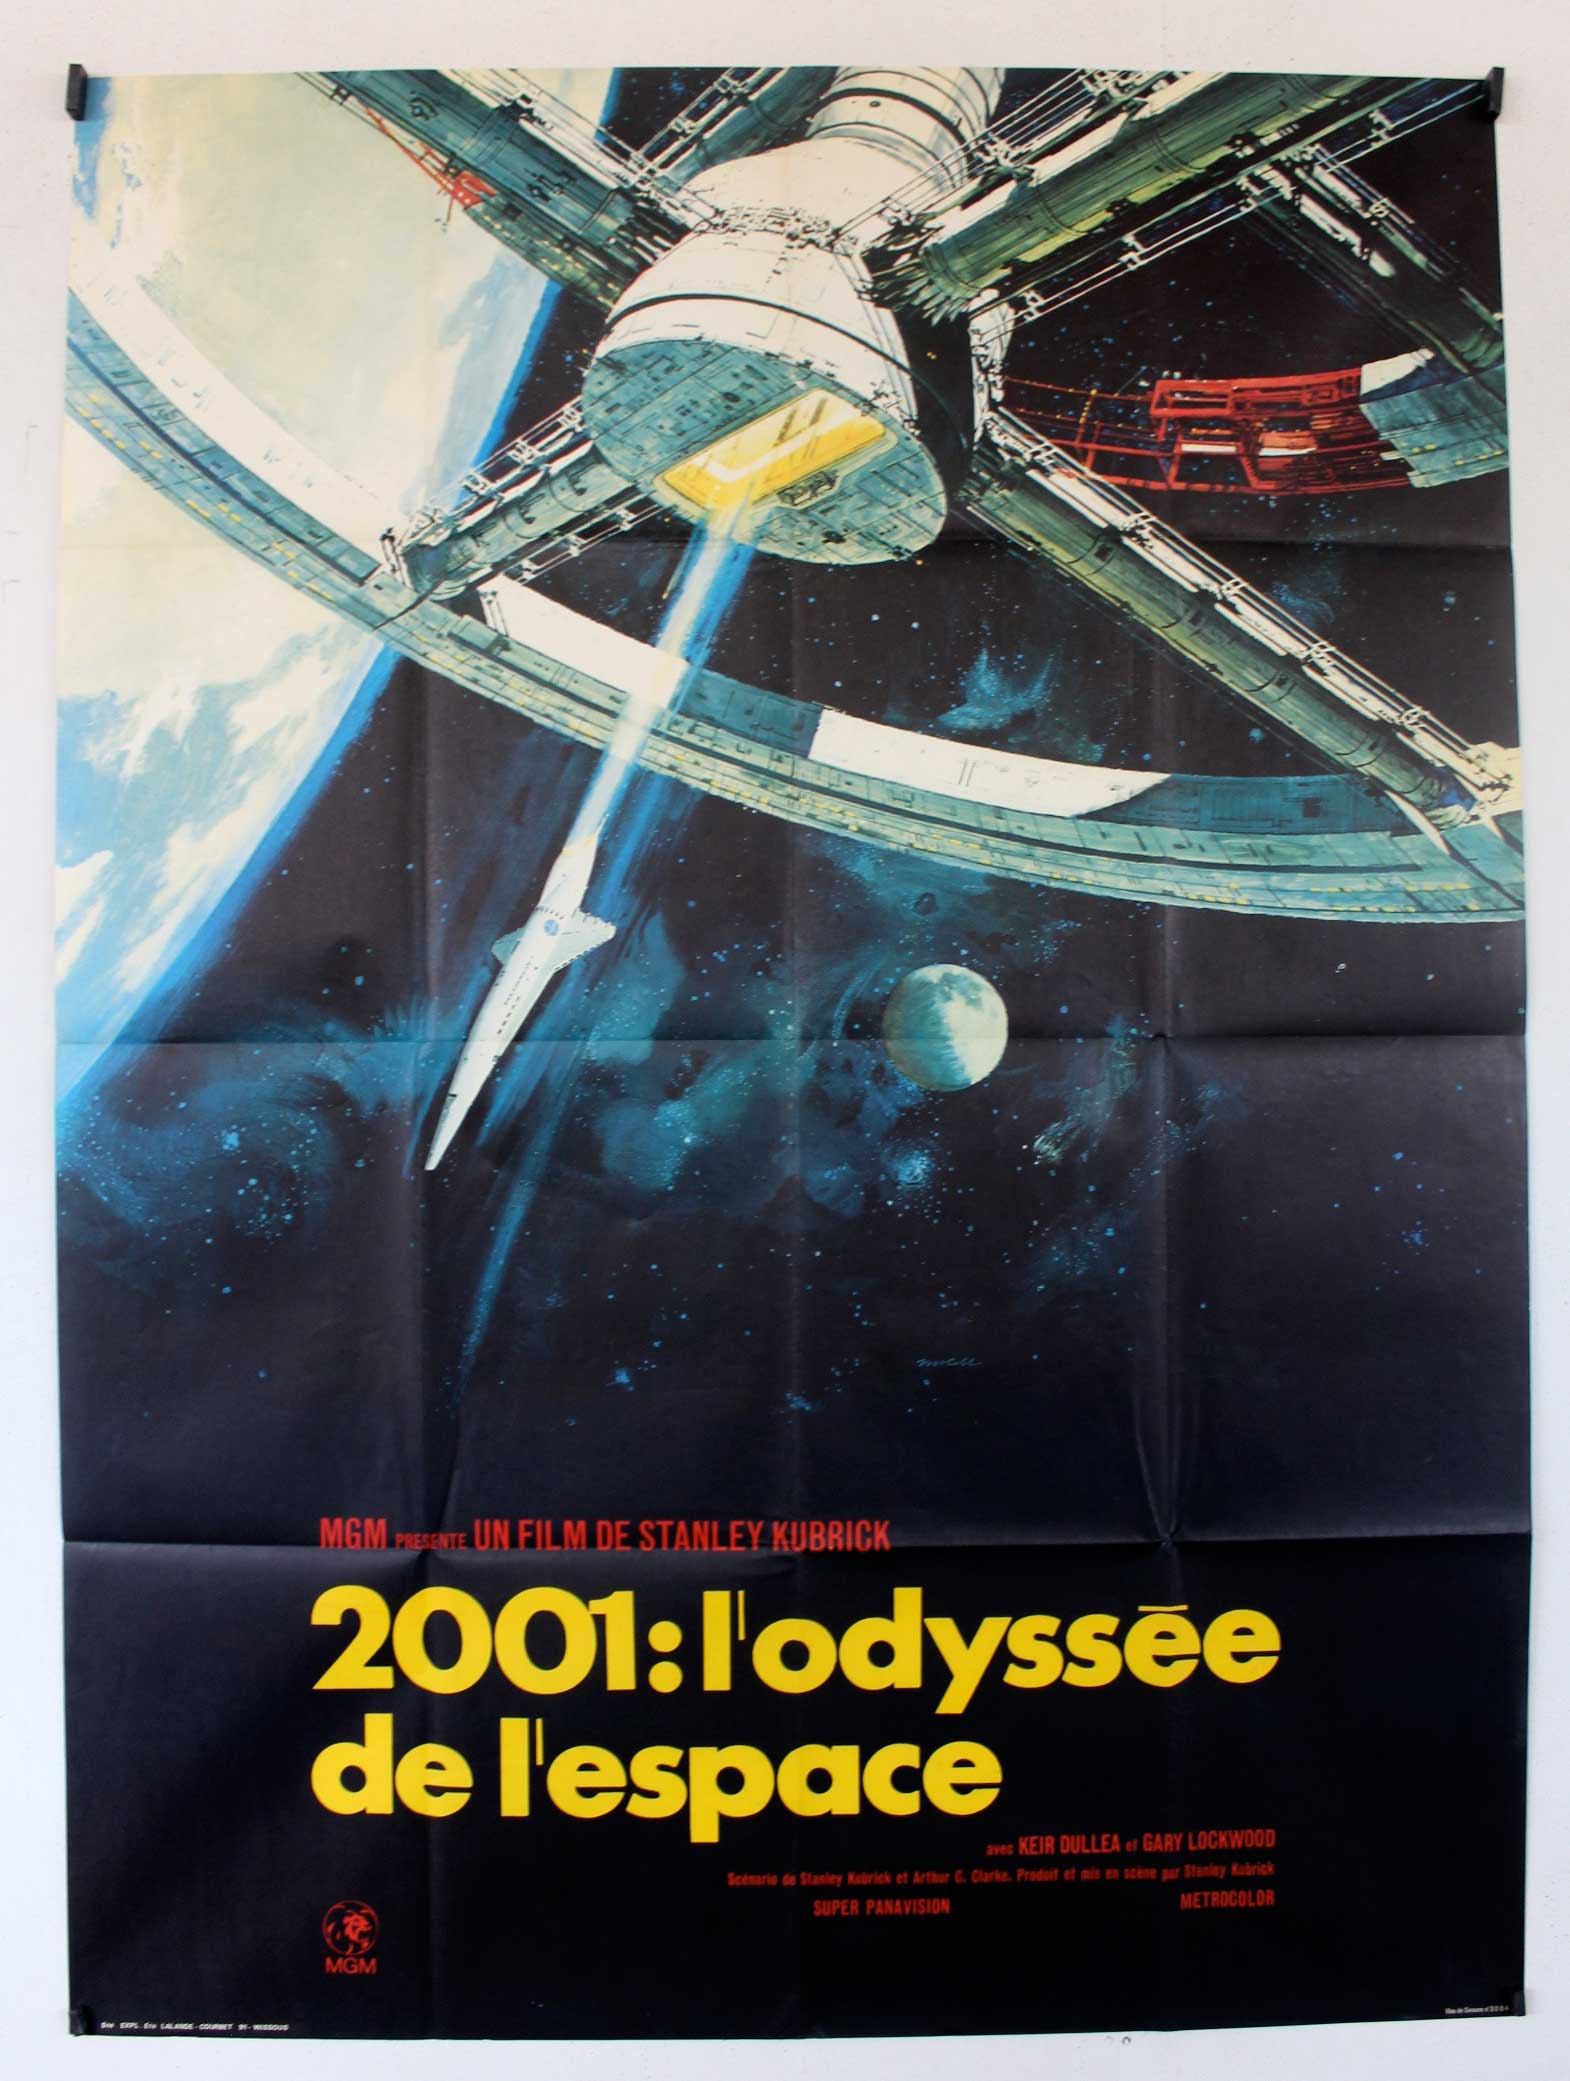 2001: LODYSSEE DE LESPACE